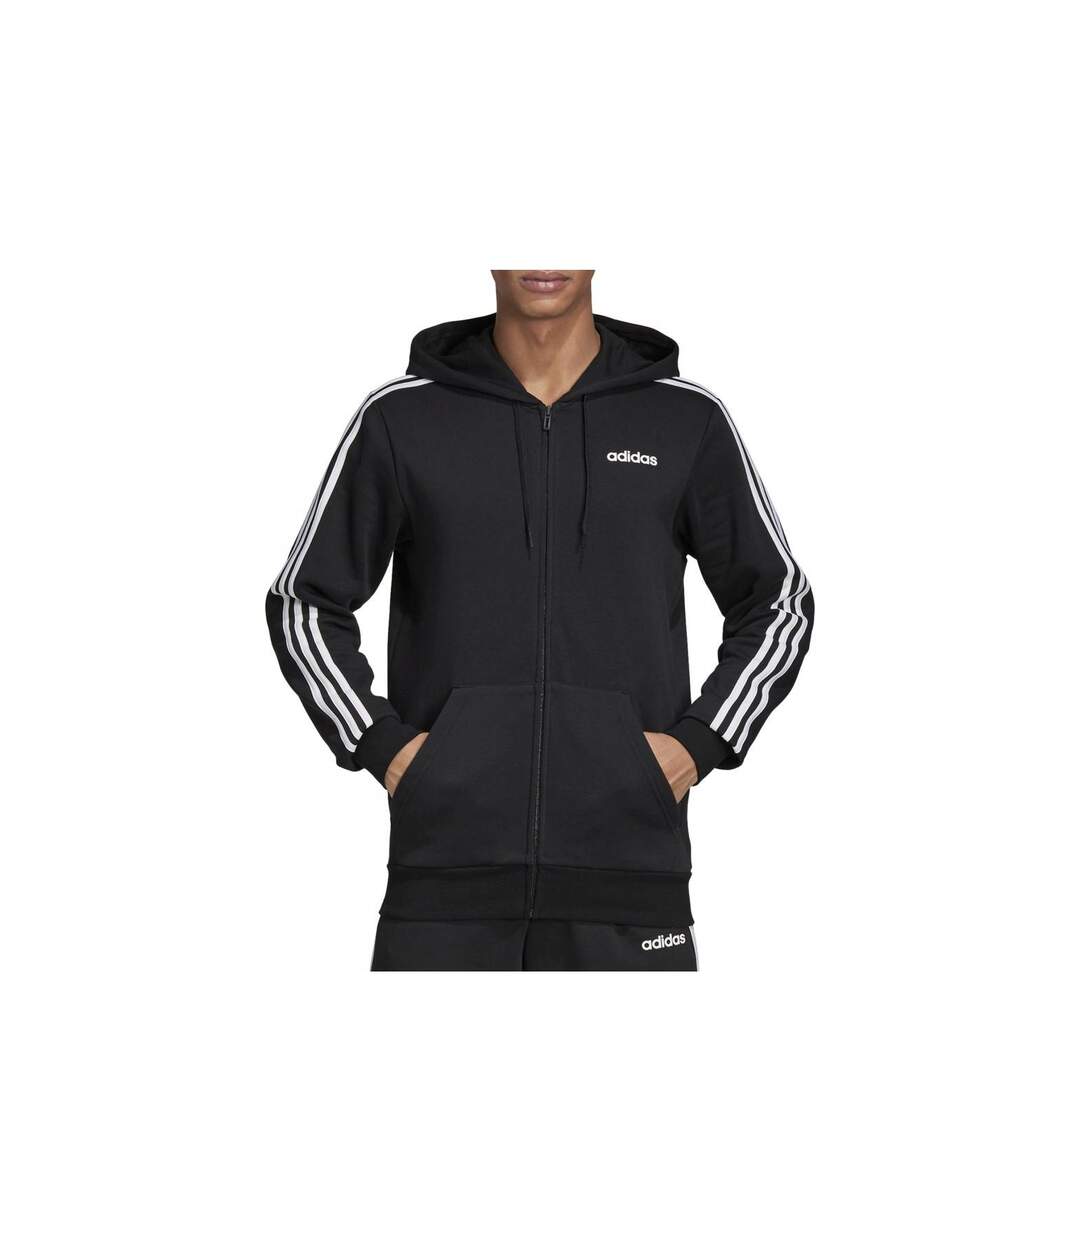 Sweat zippé iconique éco friendly  -  Adidas - Homme